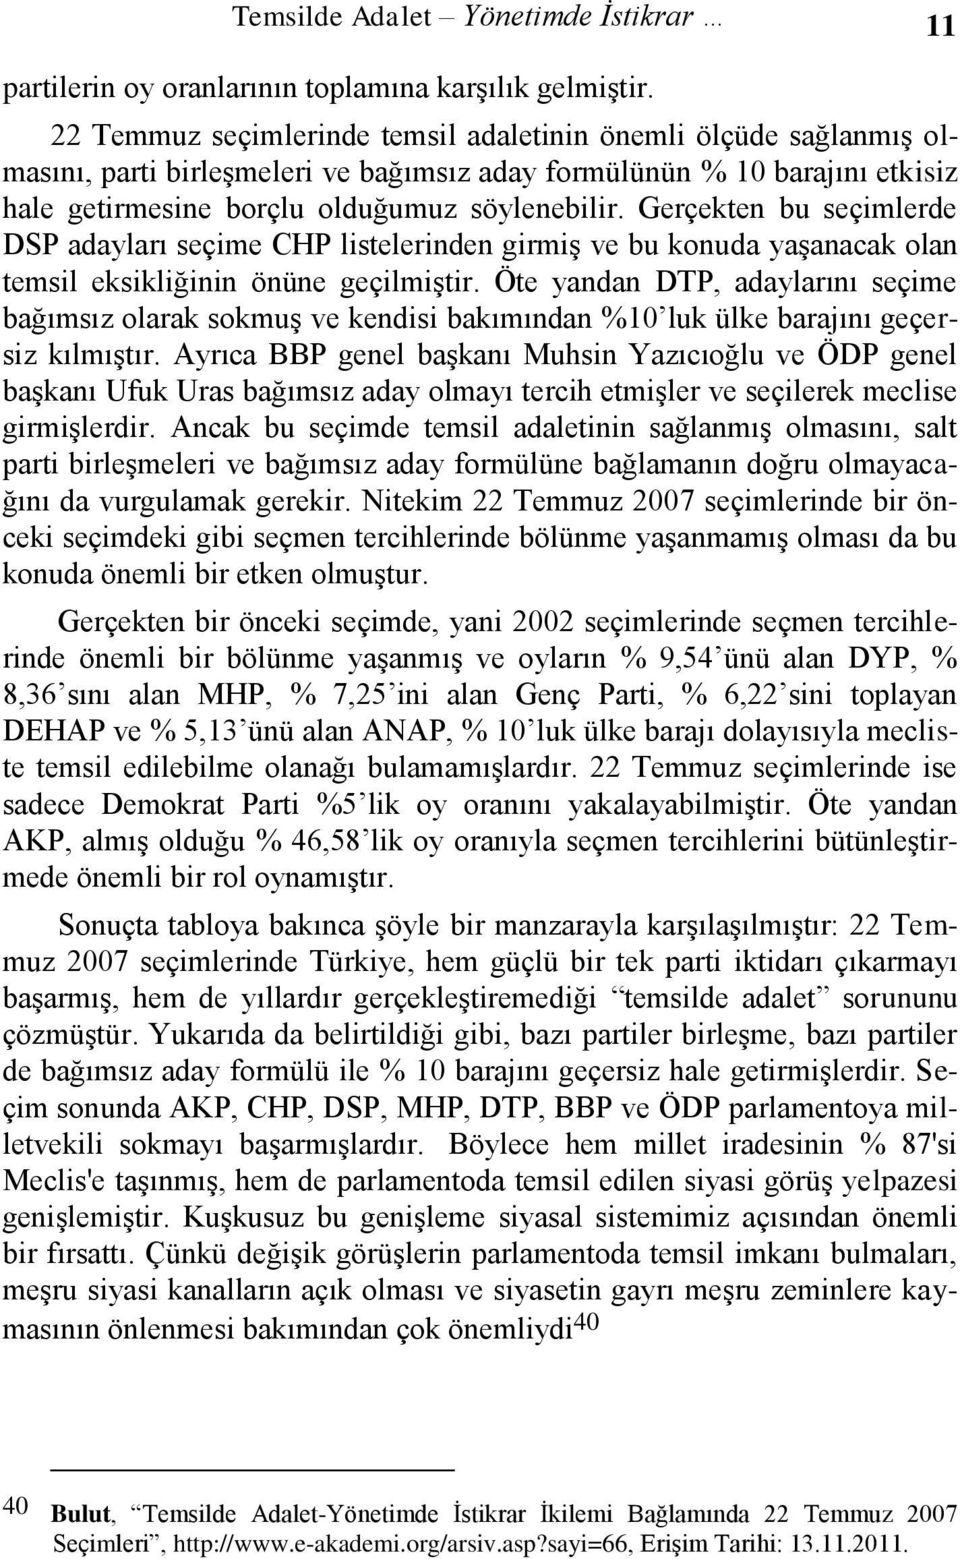 Gerçekten bu seçimlerde DSP adayları seçime CHP listelerinden girmiş ve bu konuda yaşanacak olan temsil eksikliğinin önüne geçilmiştir.